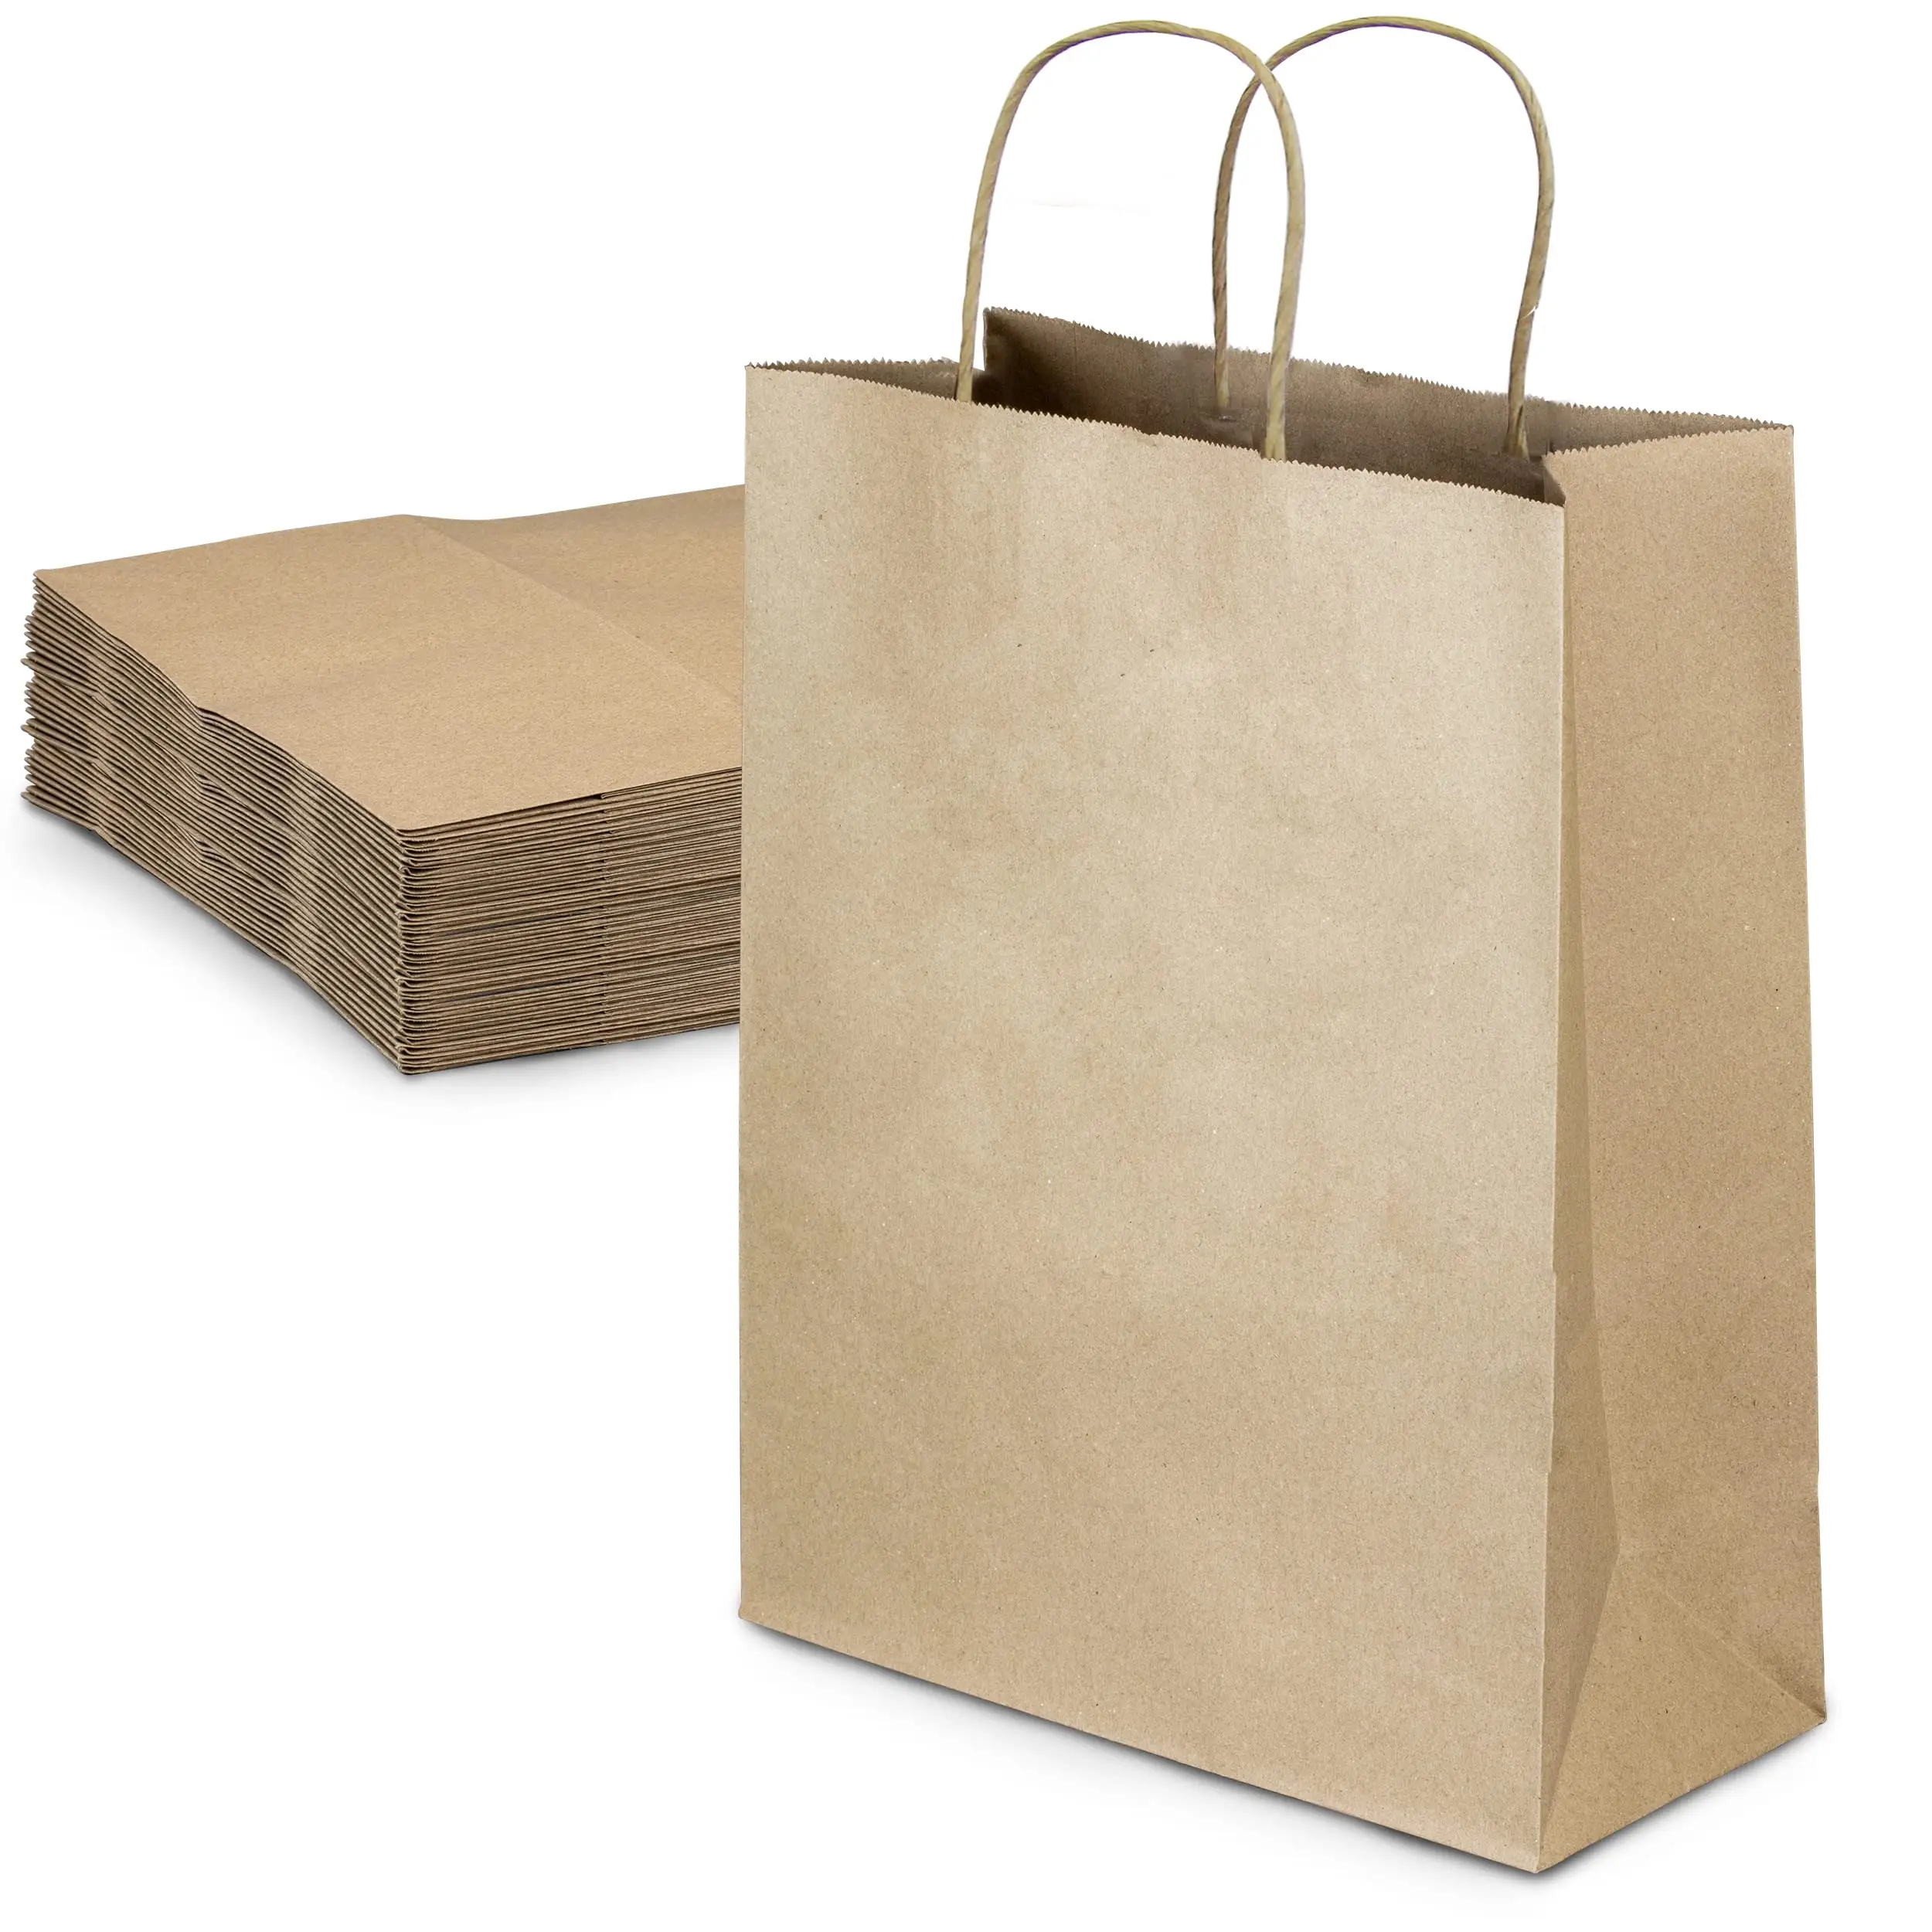 Diseño personalizado reutilizable Eid Mubarak Ramanda muselina Festival islámico compras embalaje bolsas de regalo de papel con asas